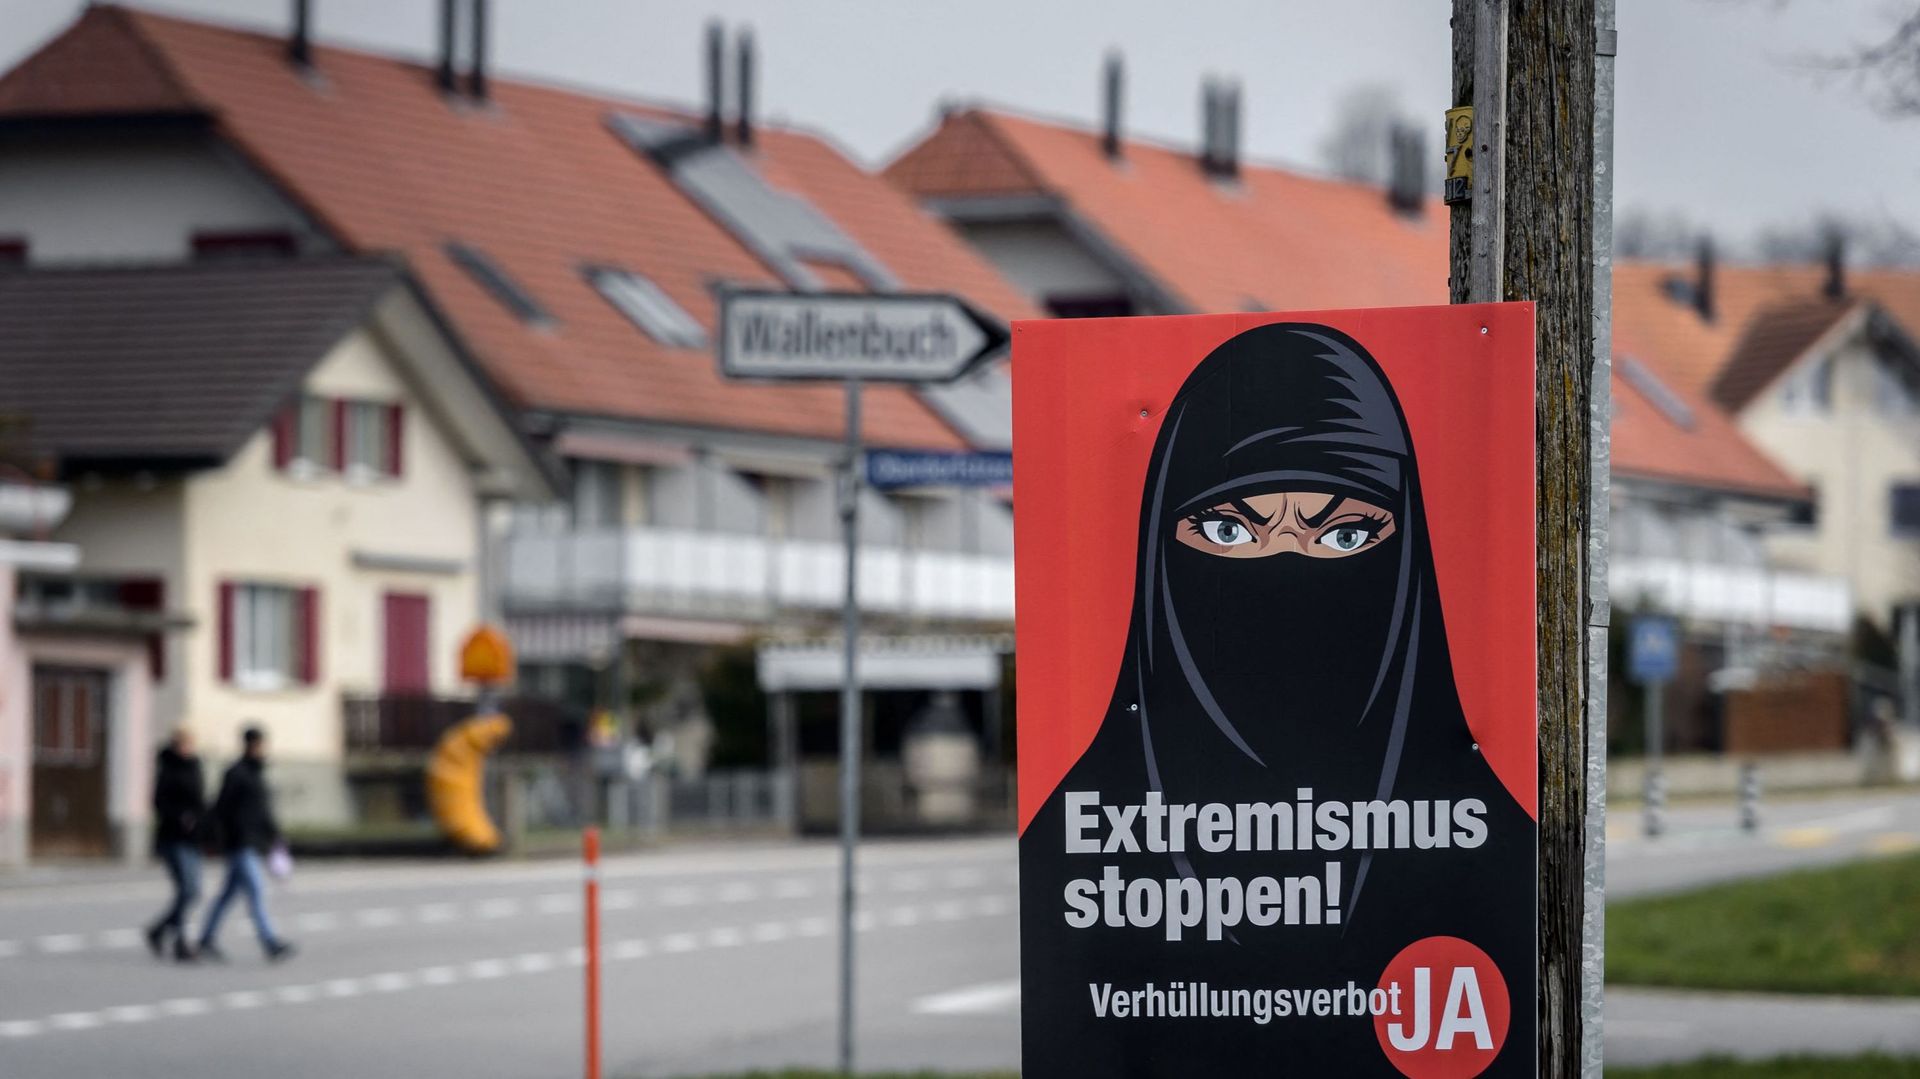 Suisse : Amnesty dénonce l’interdiction du voile intégral, qui "discrimine la communauté" musulmane